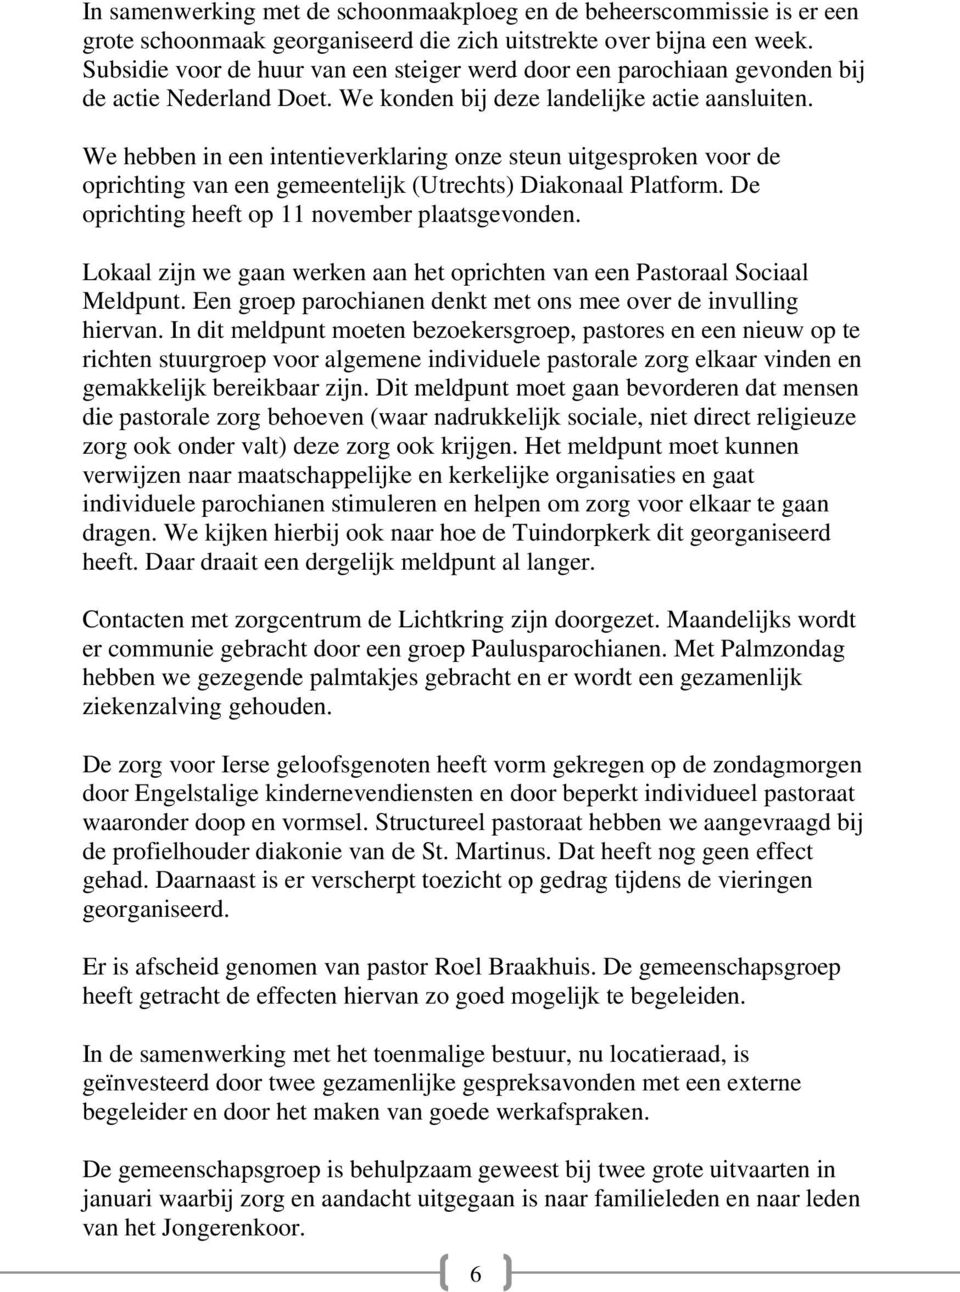 We hebben in een intentieverklaring onze steun uitgesproken voor de oprichting van een gemeentelijk (Utrechts) Diakonaal Platform. De oprichting heeft op 11 november plaatsgevonden.